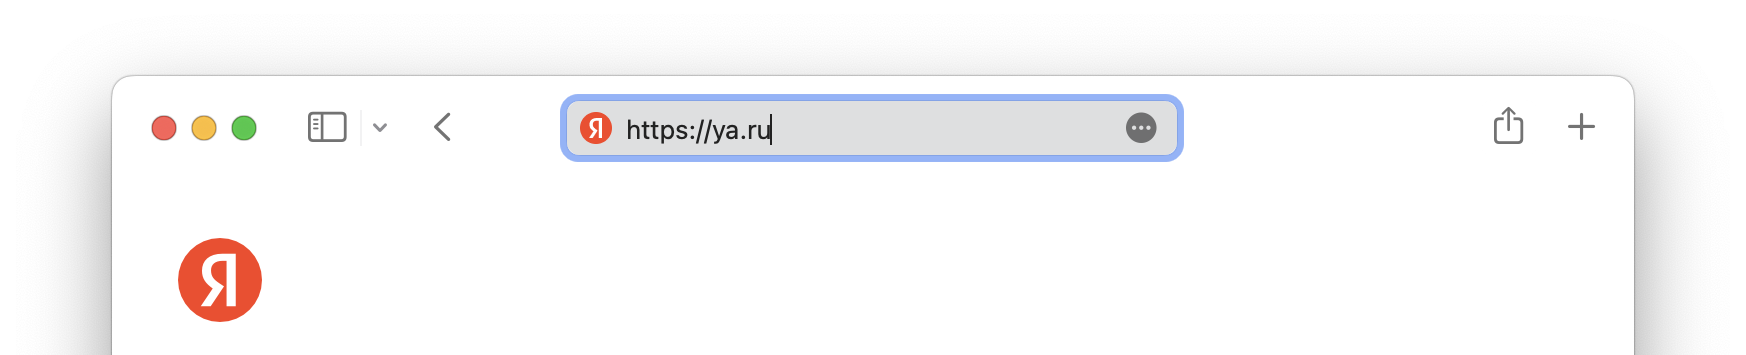 Адрес Яндекса в строке браузера